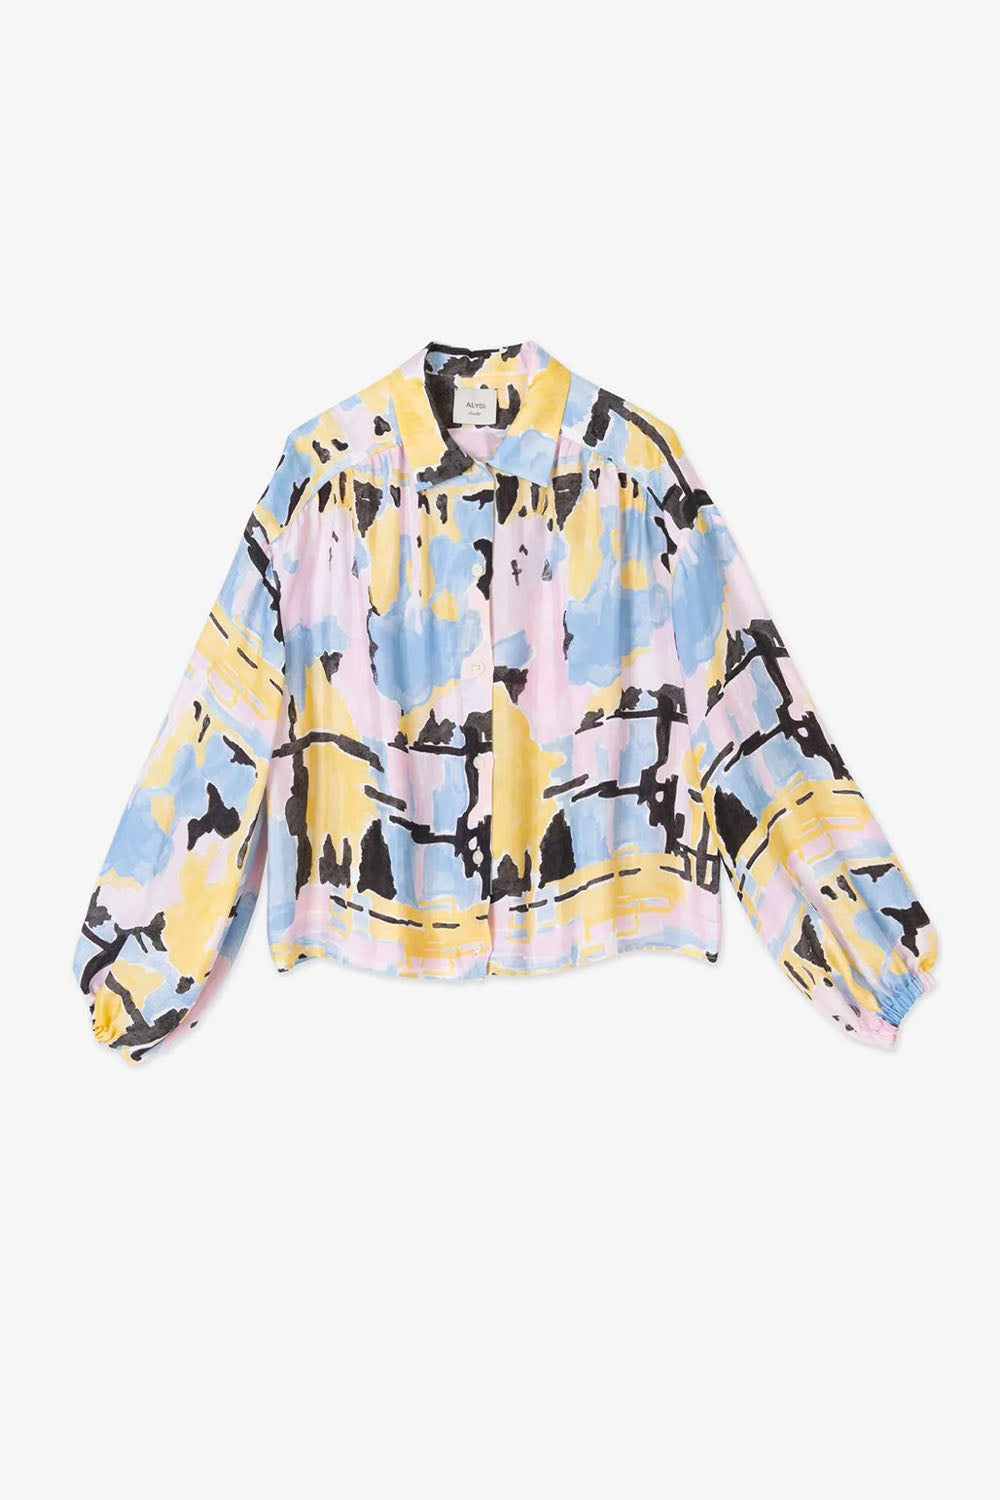 Alysi - Camicia Forest Shirt: Unicorno